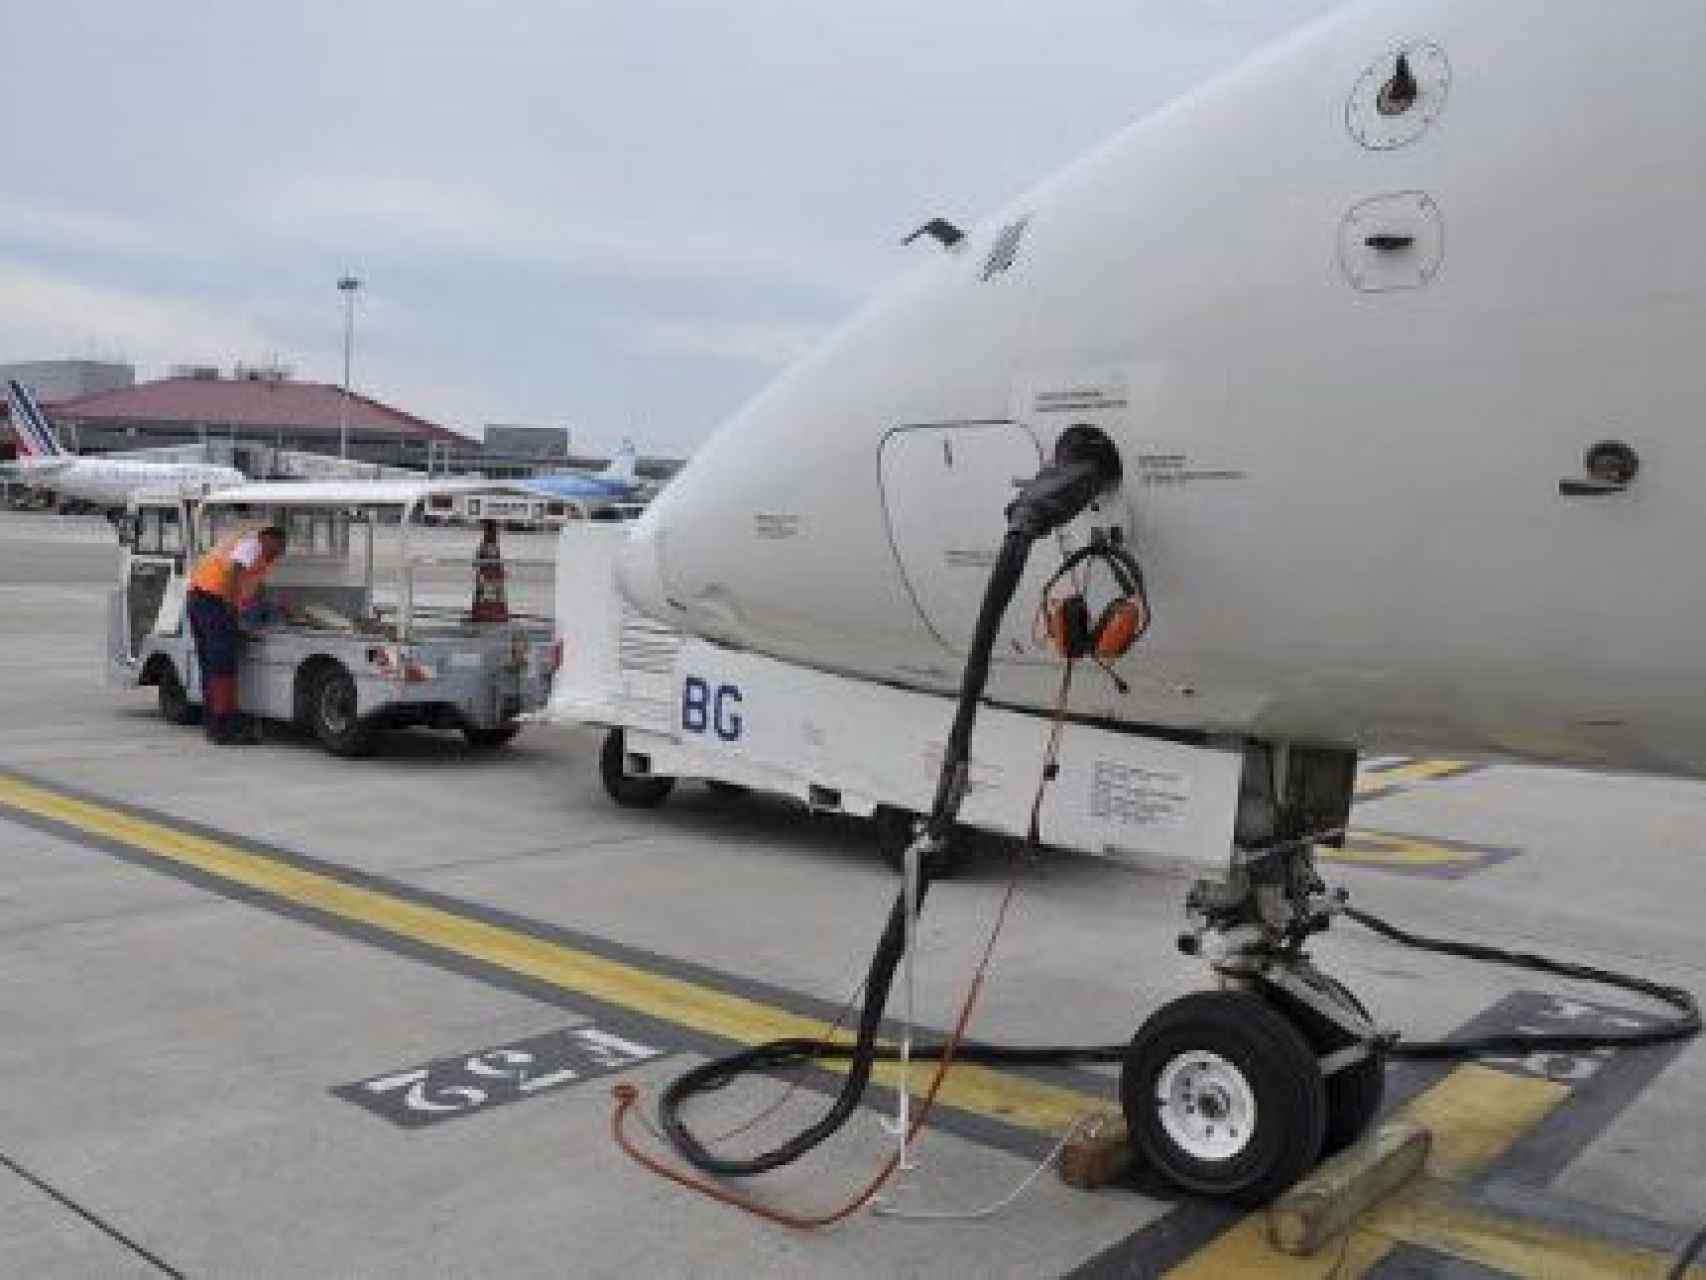 La compañía aérea Lamia pudo haber sido responsable de no llevar suficiente combustible.